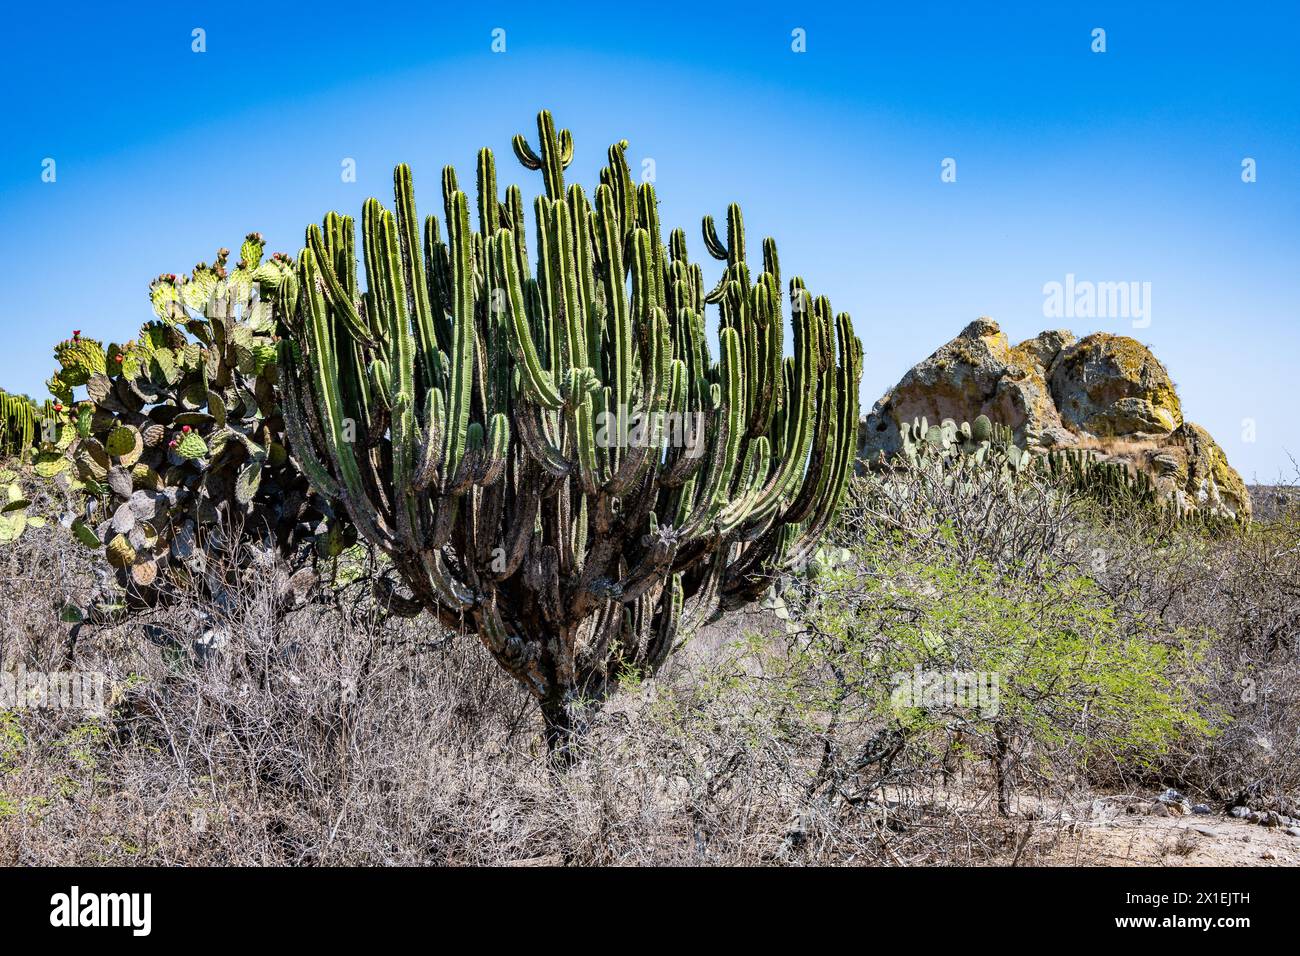 Riesenkaktus (Myrtillocactus schenckii) in der Wüste. Oaxaca, Mexiko. Stockfoto